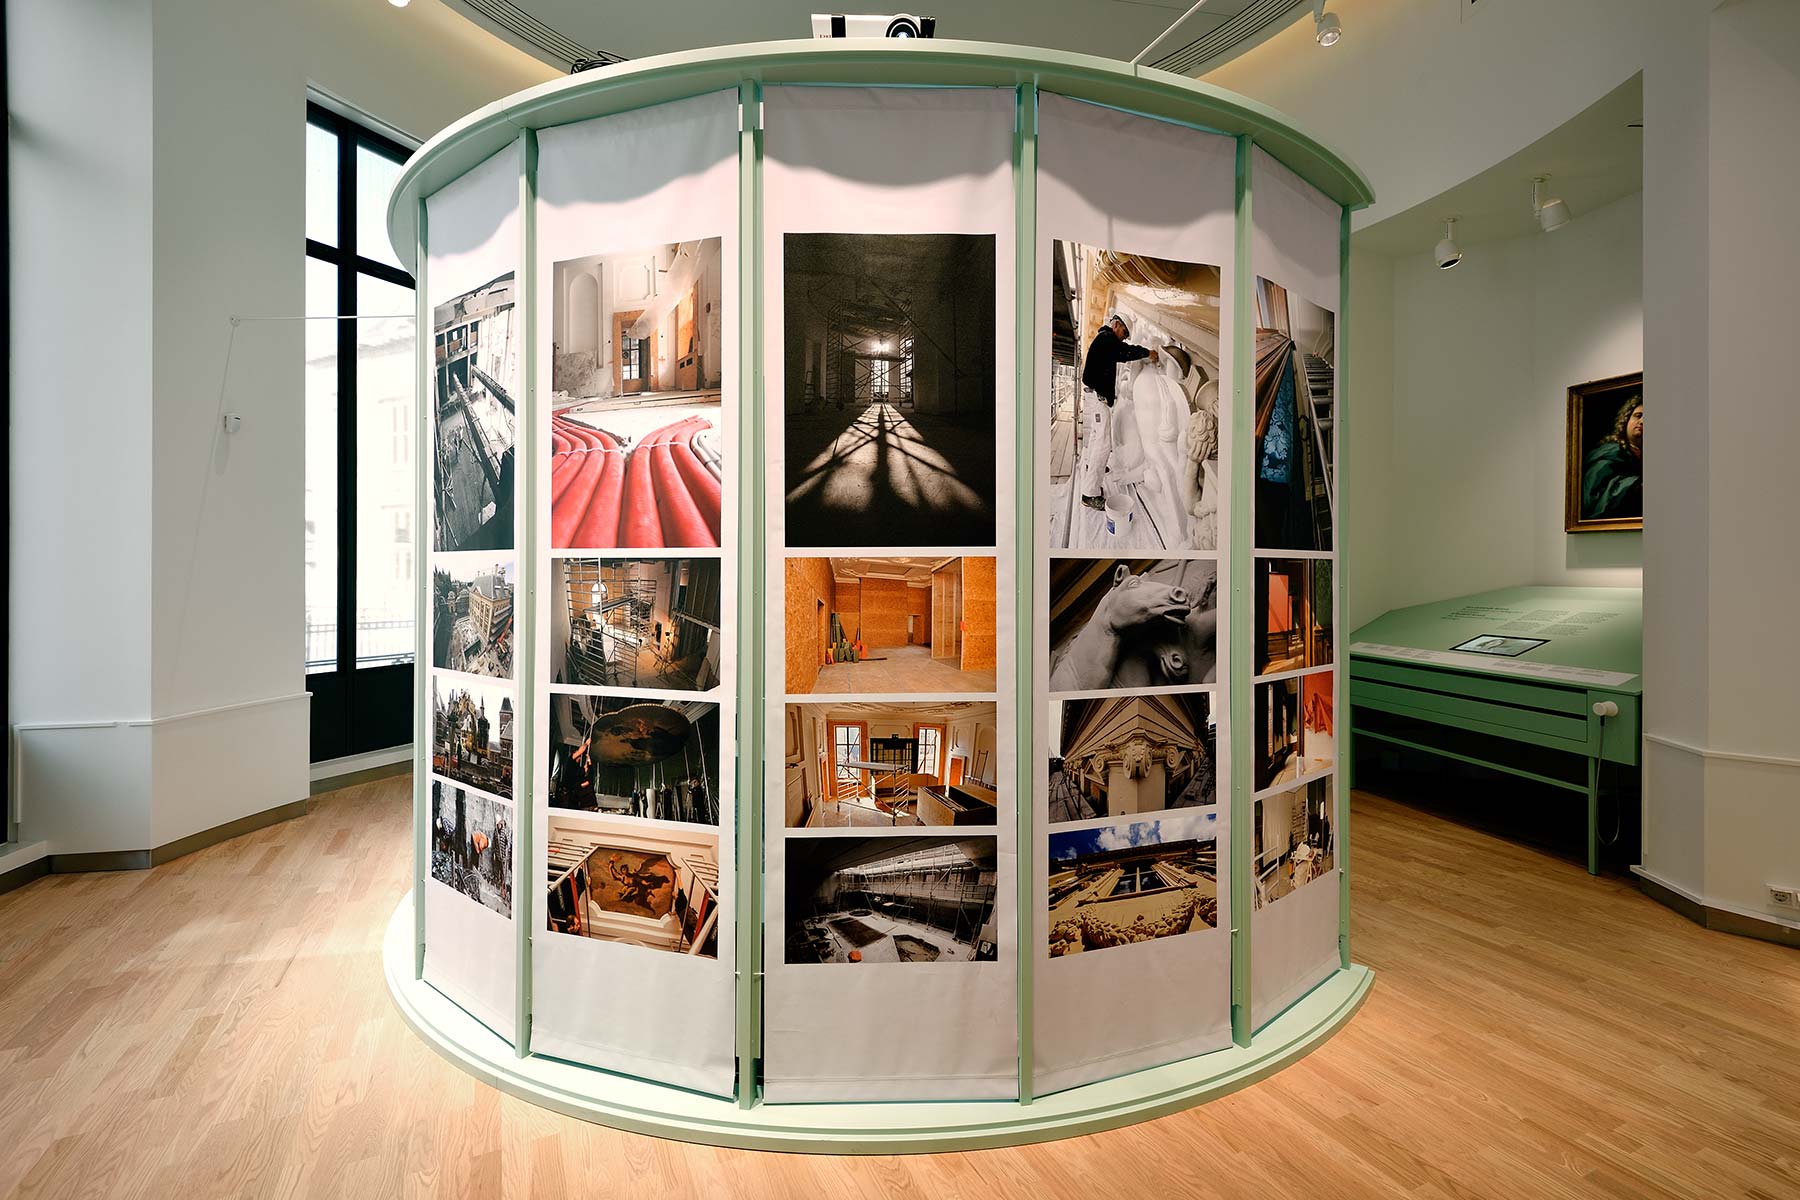 Mauritshuis tentoonstelling "Het Gebouw"